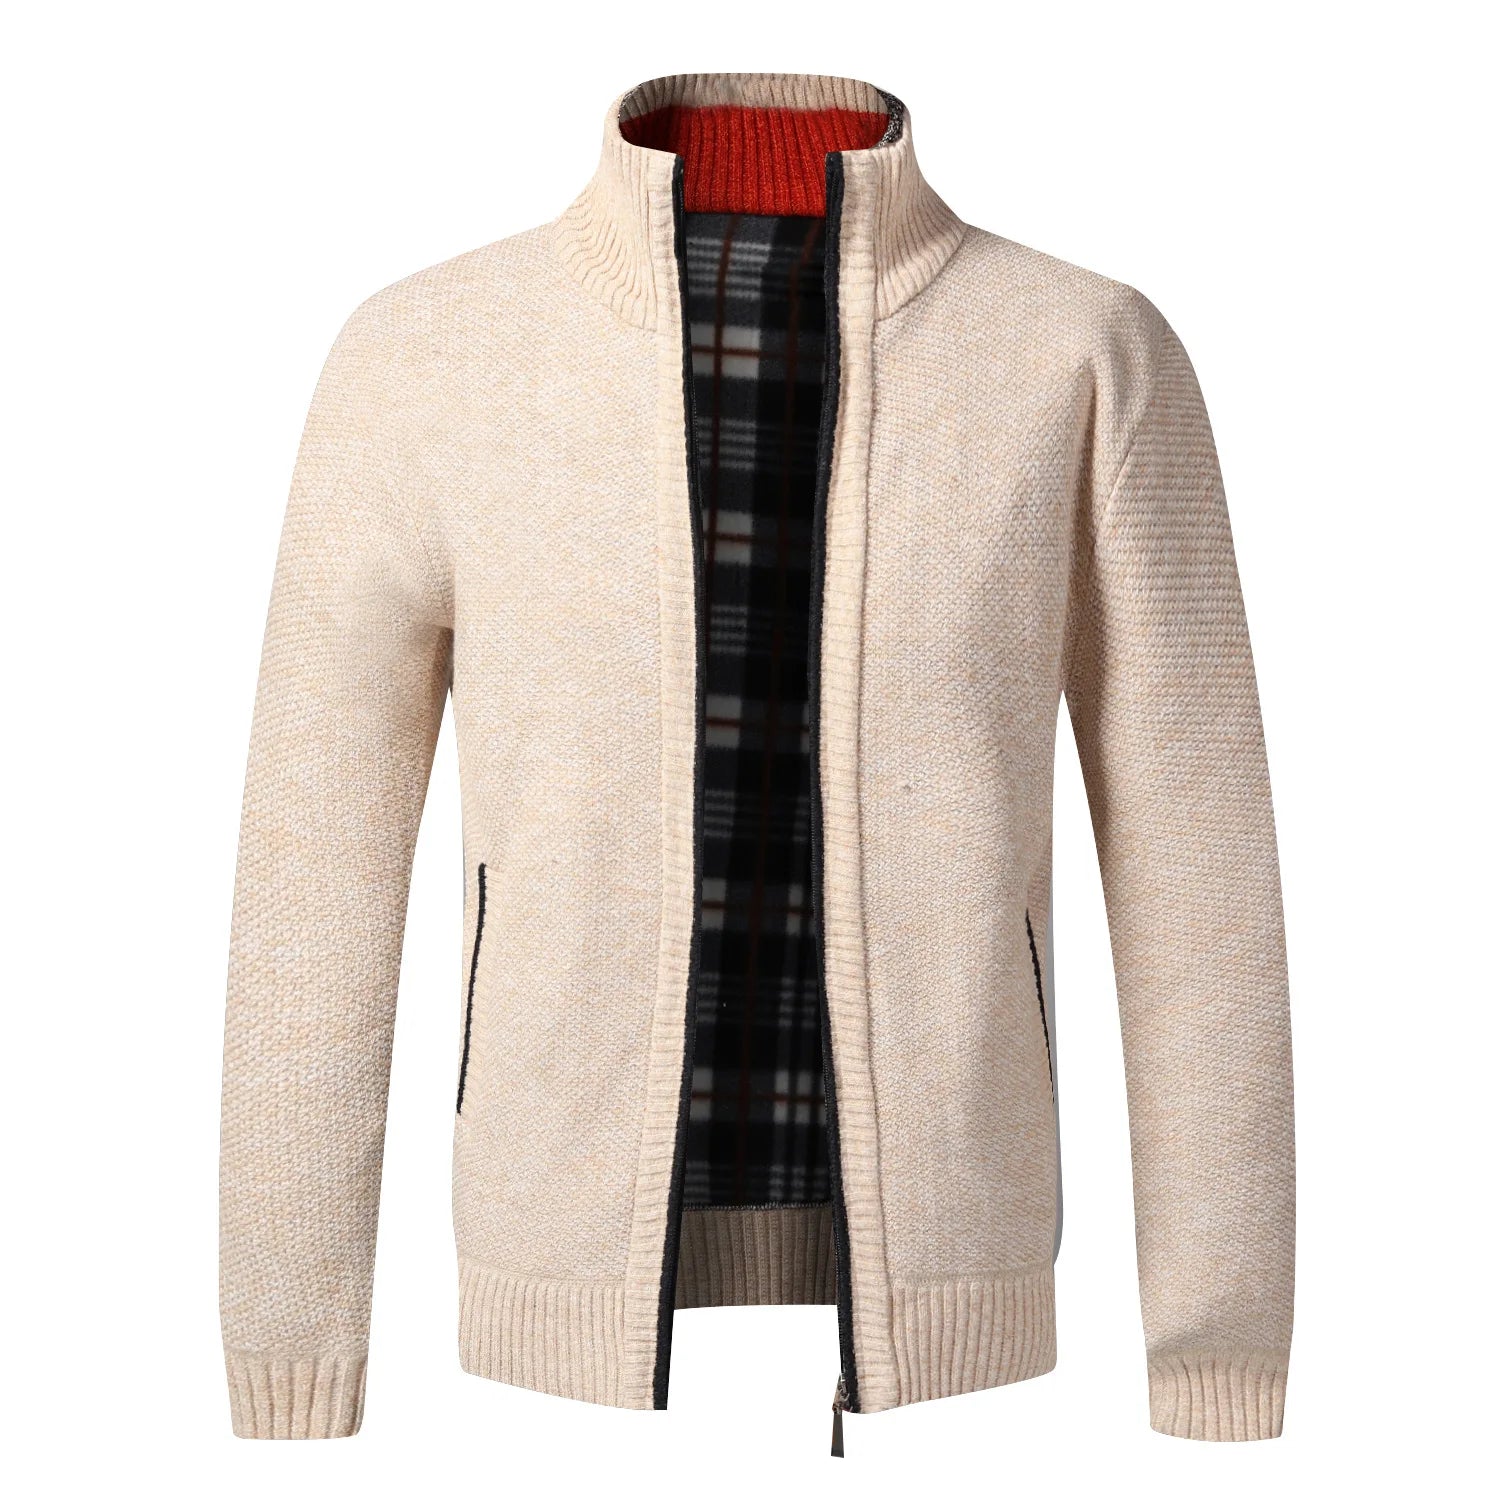 TEEK - Warm Knitted Zipper Sweater Jacket JACKET theteekdotcom beige US XS | Tag M 